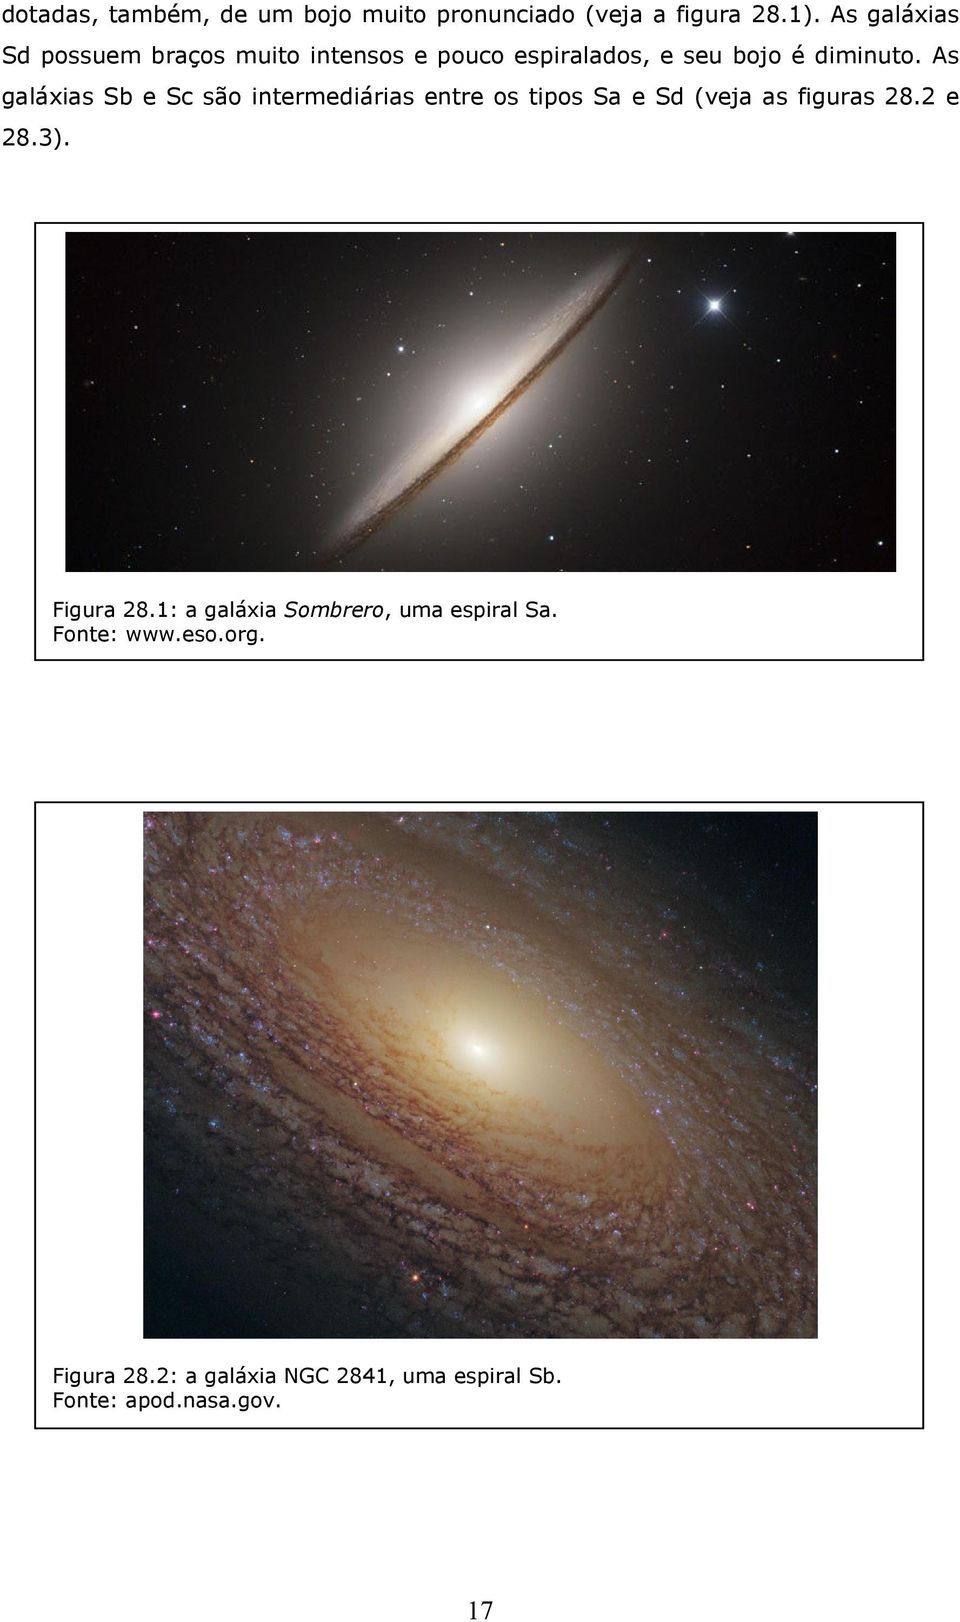 As galáxias Sb e Sc são intermediárias entre os tipos Sa e Sd (veja as figuras 28.2 e 28.3).